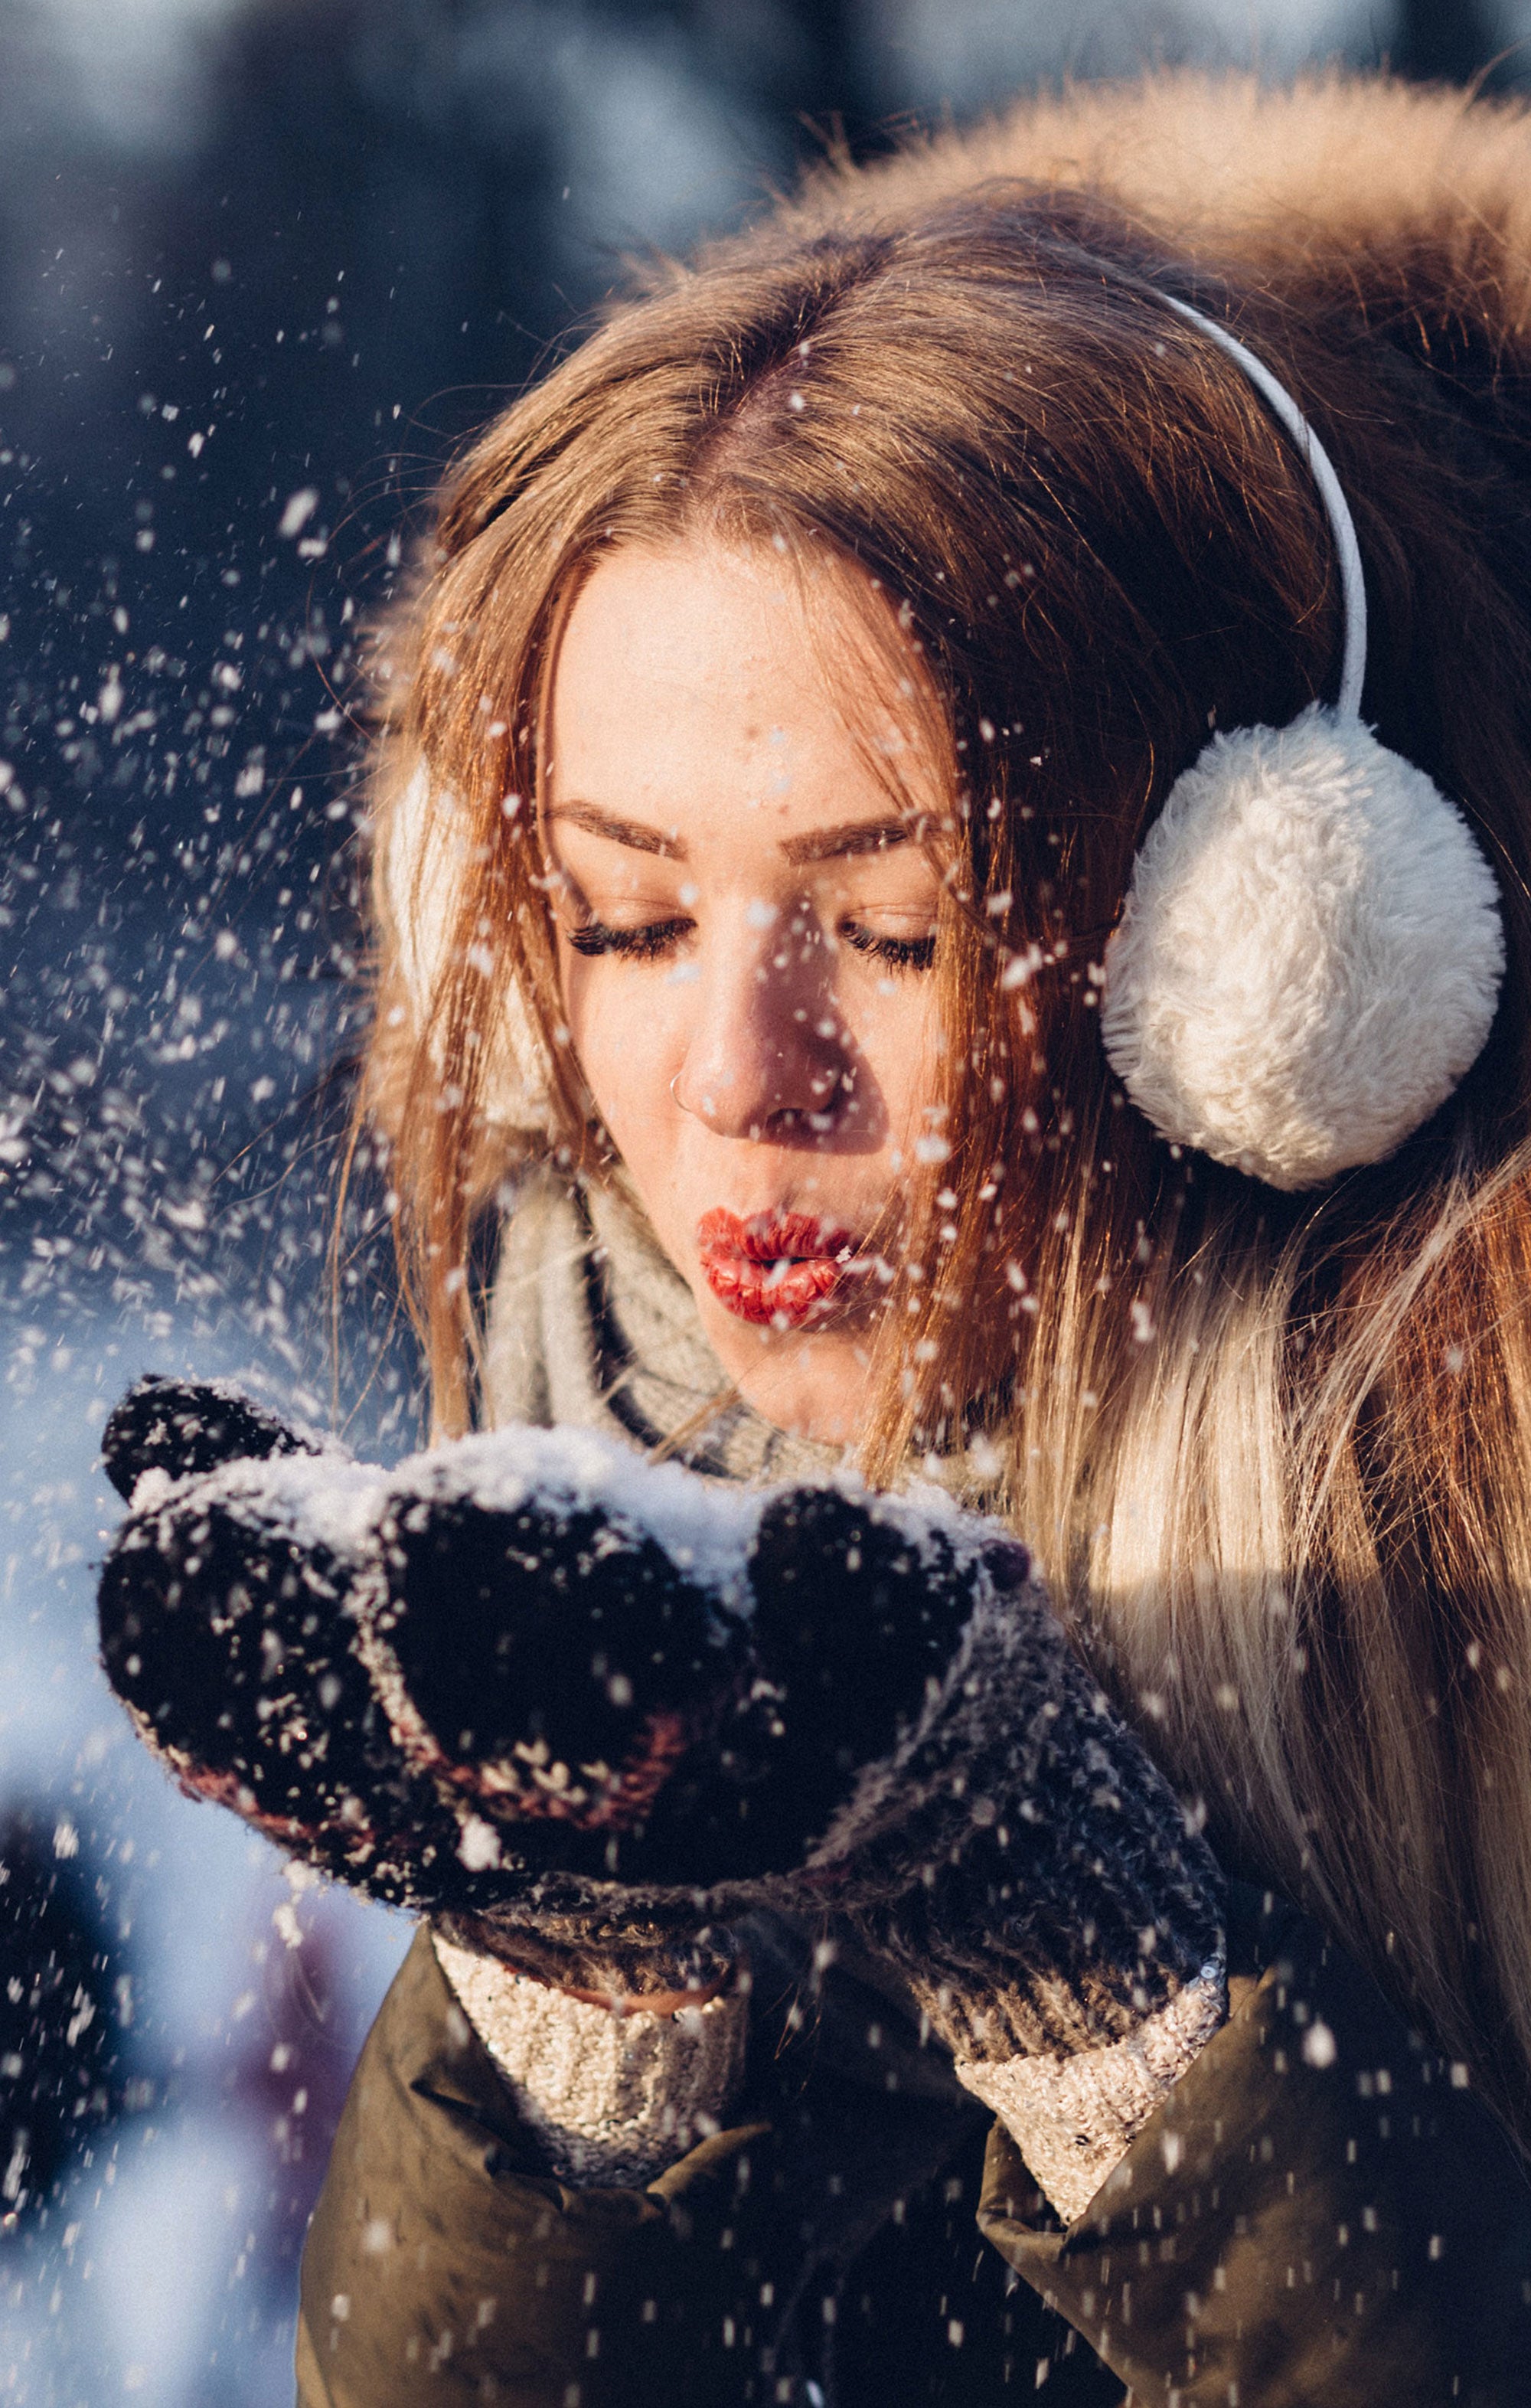 Vinterpleje Hudpleje: Sådan hjælper du din hud med at håndtere den hårde kulde, vind og tørhed